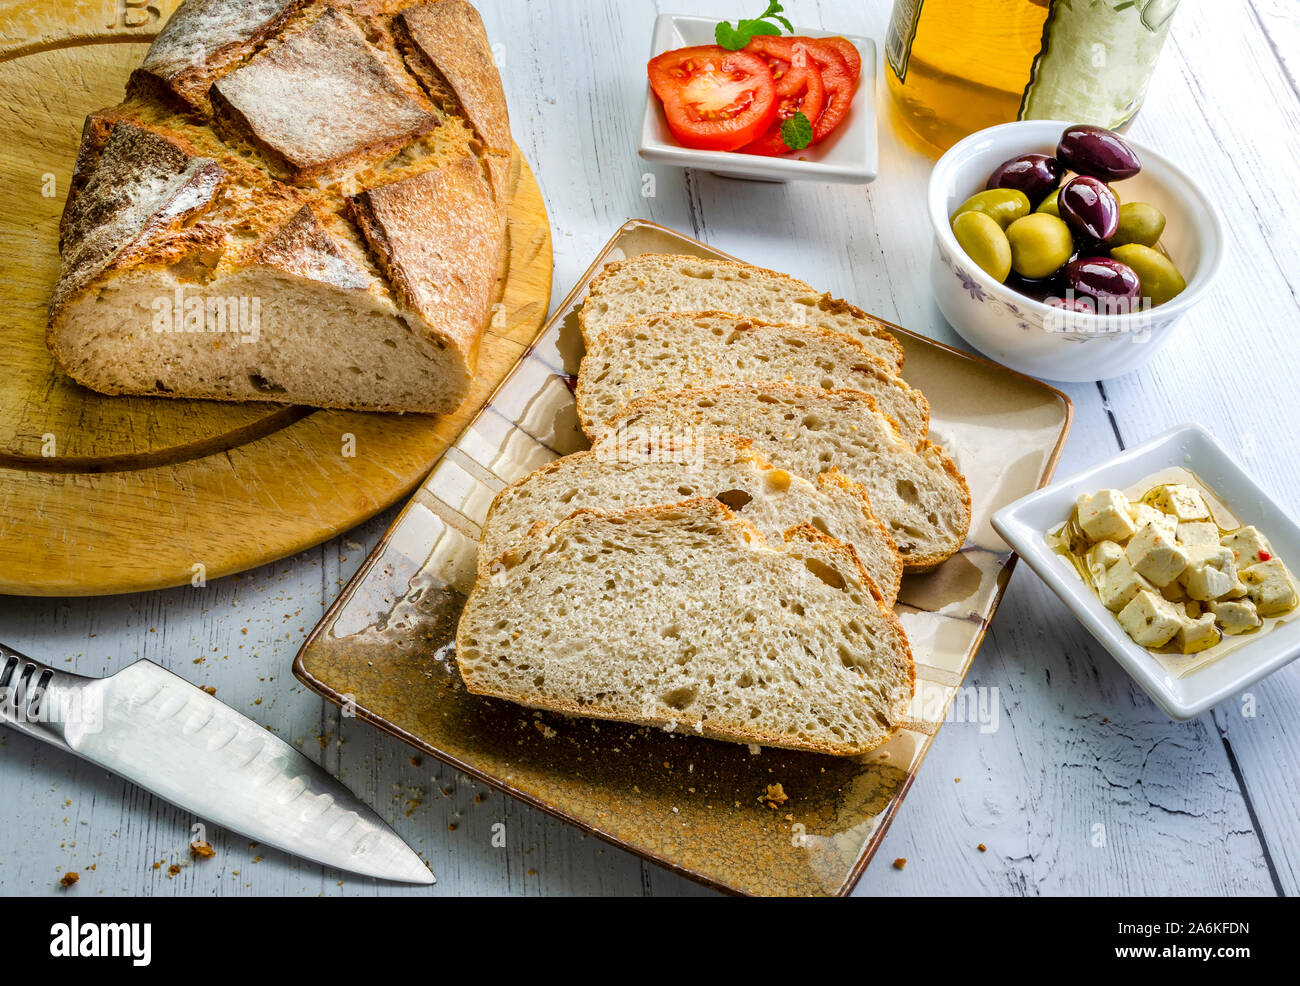 Scheiben von sauerteigbrot zusammen mit Feta Käse, schwarze und grüne Oliven und Tomaten. Stockfoto